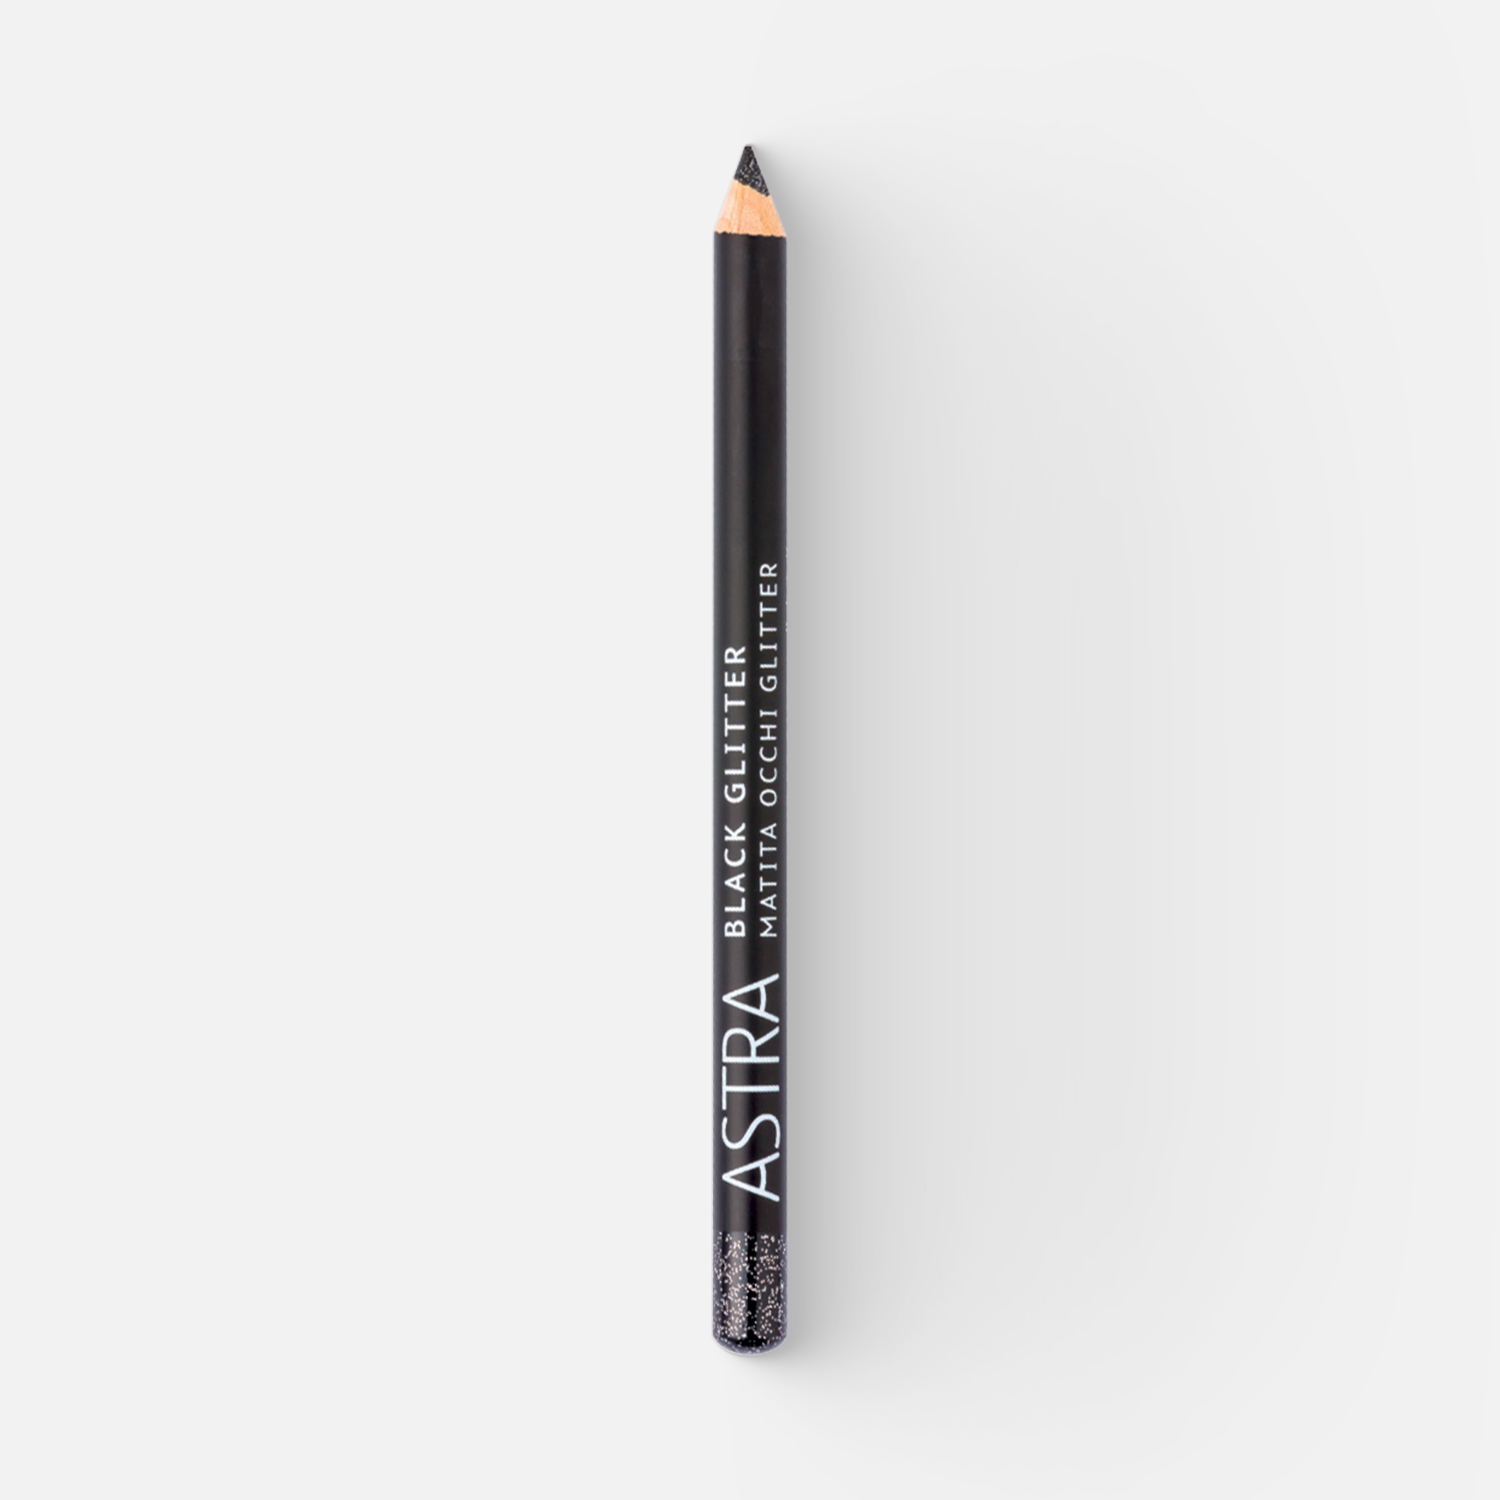 Карандаш для глаз Astra Black glitter контурный BG 7 г карандаш для глаз astra pure beauty контурный тон 02 4 г